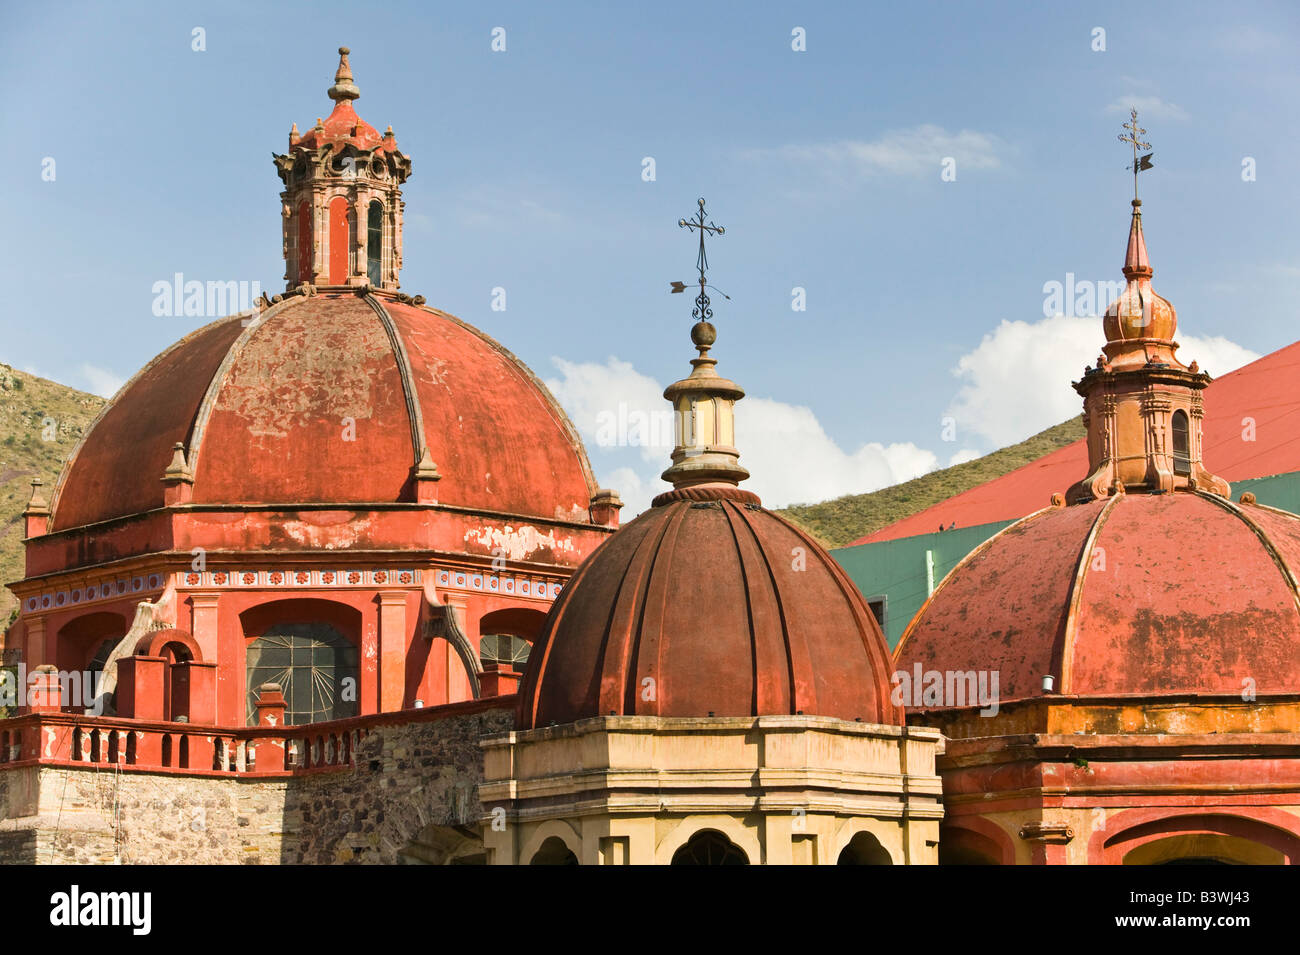 Mexico, Guanajuato State, Guanajuato. Templo de San Diego de Alcala Church / Domes Stock Photo